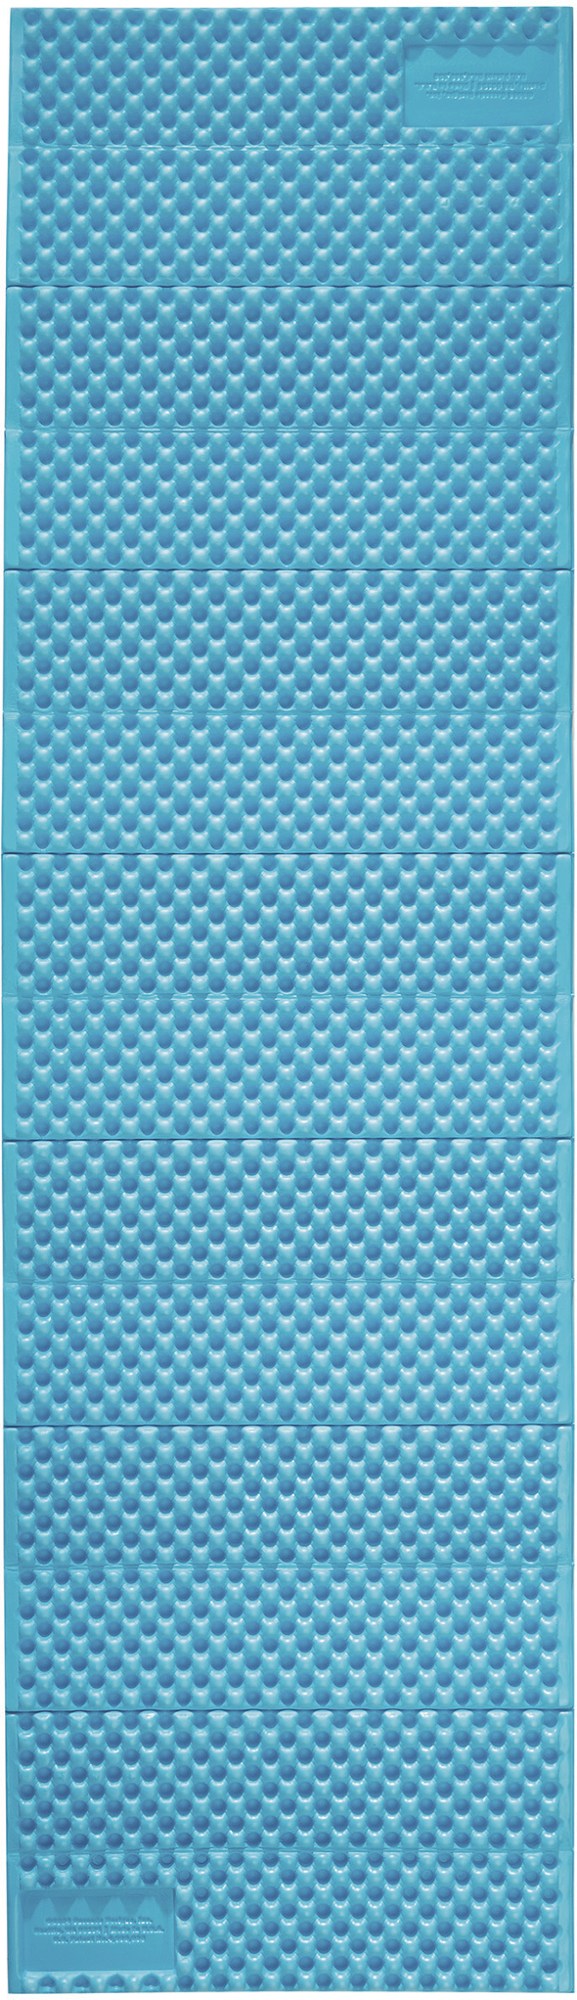 Спальный коврик Z Lite Sol Therm-a-Rest, синий соединитель synergy lite 20 листов therm a rest цвет stargazer